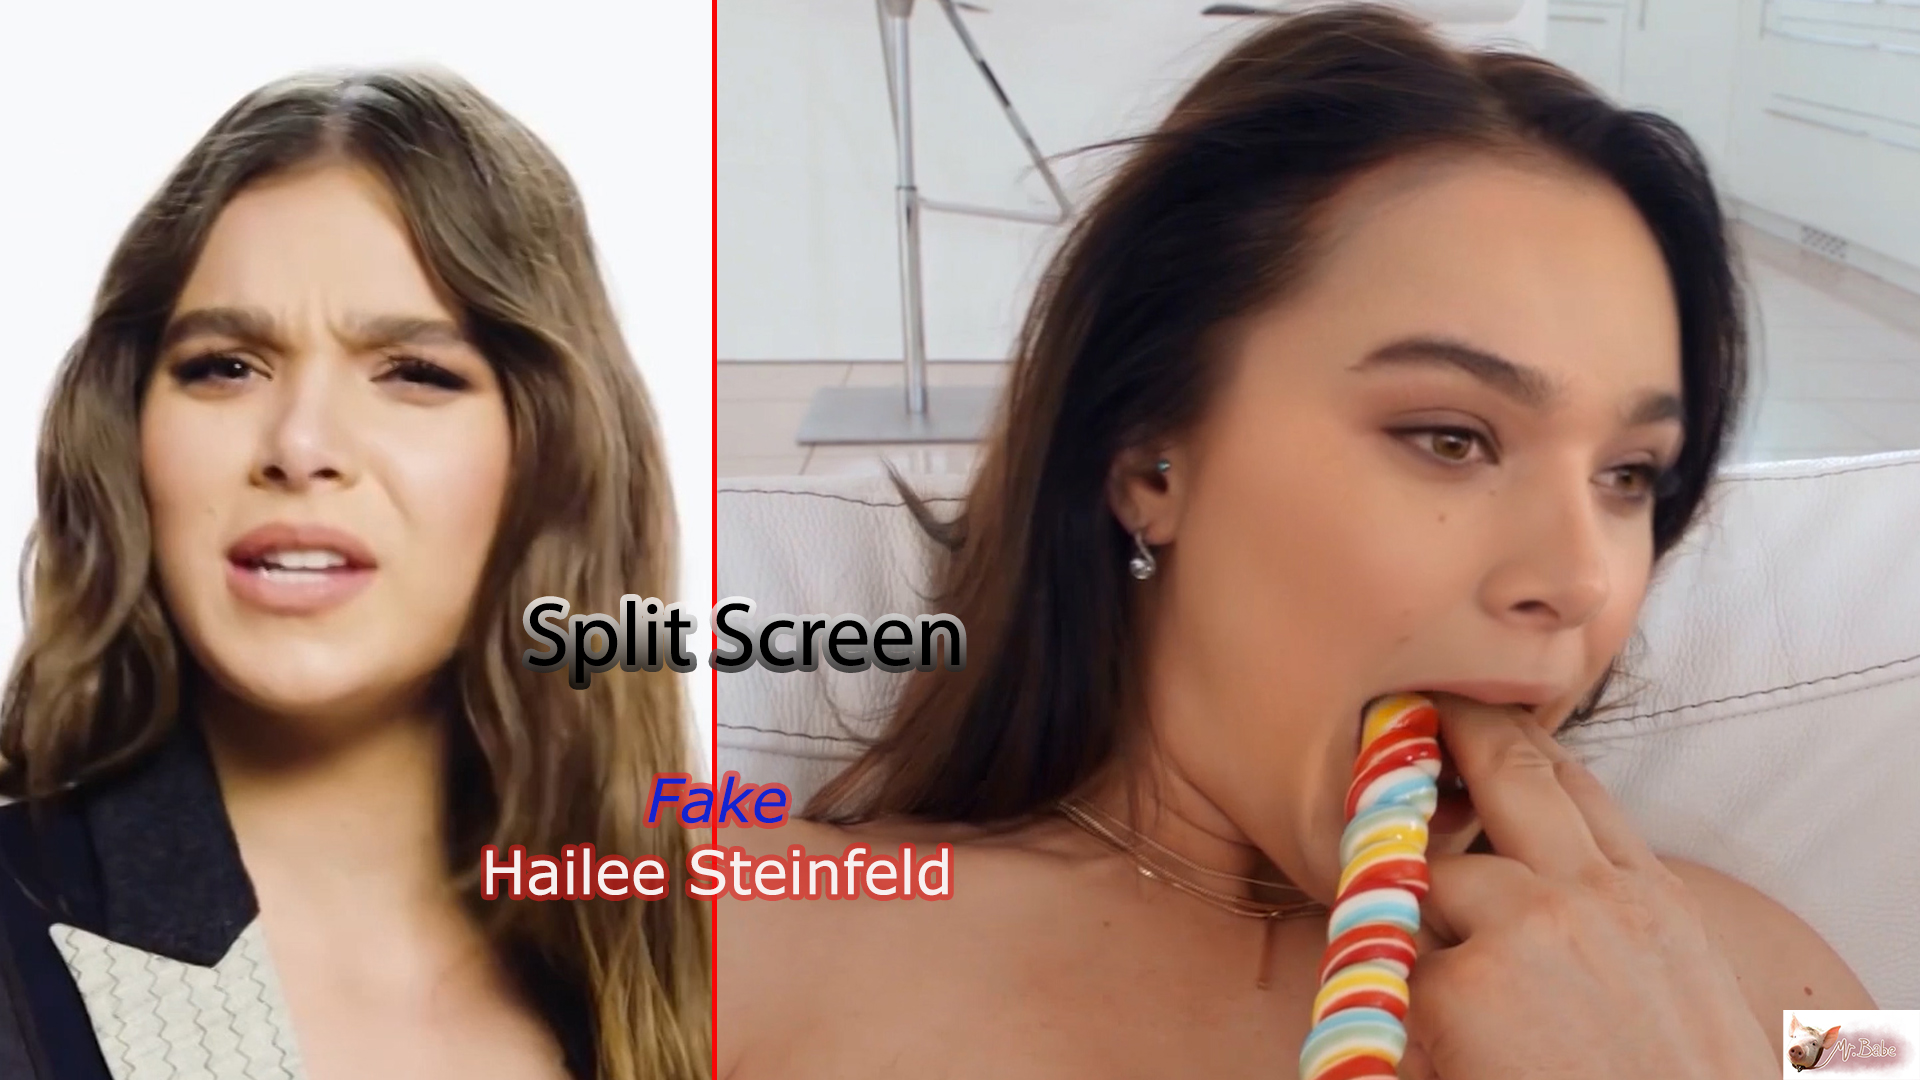 Fake Hailee Steinfeld -(trailer) -3- Split Screen / Free Download